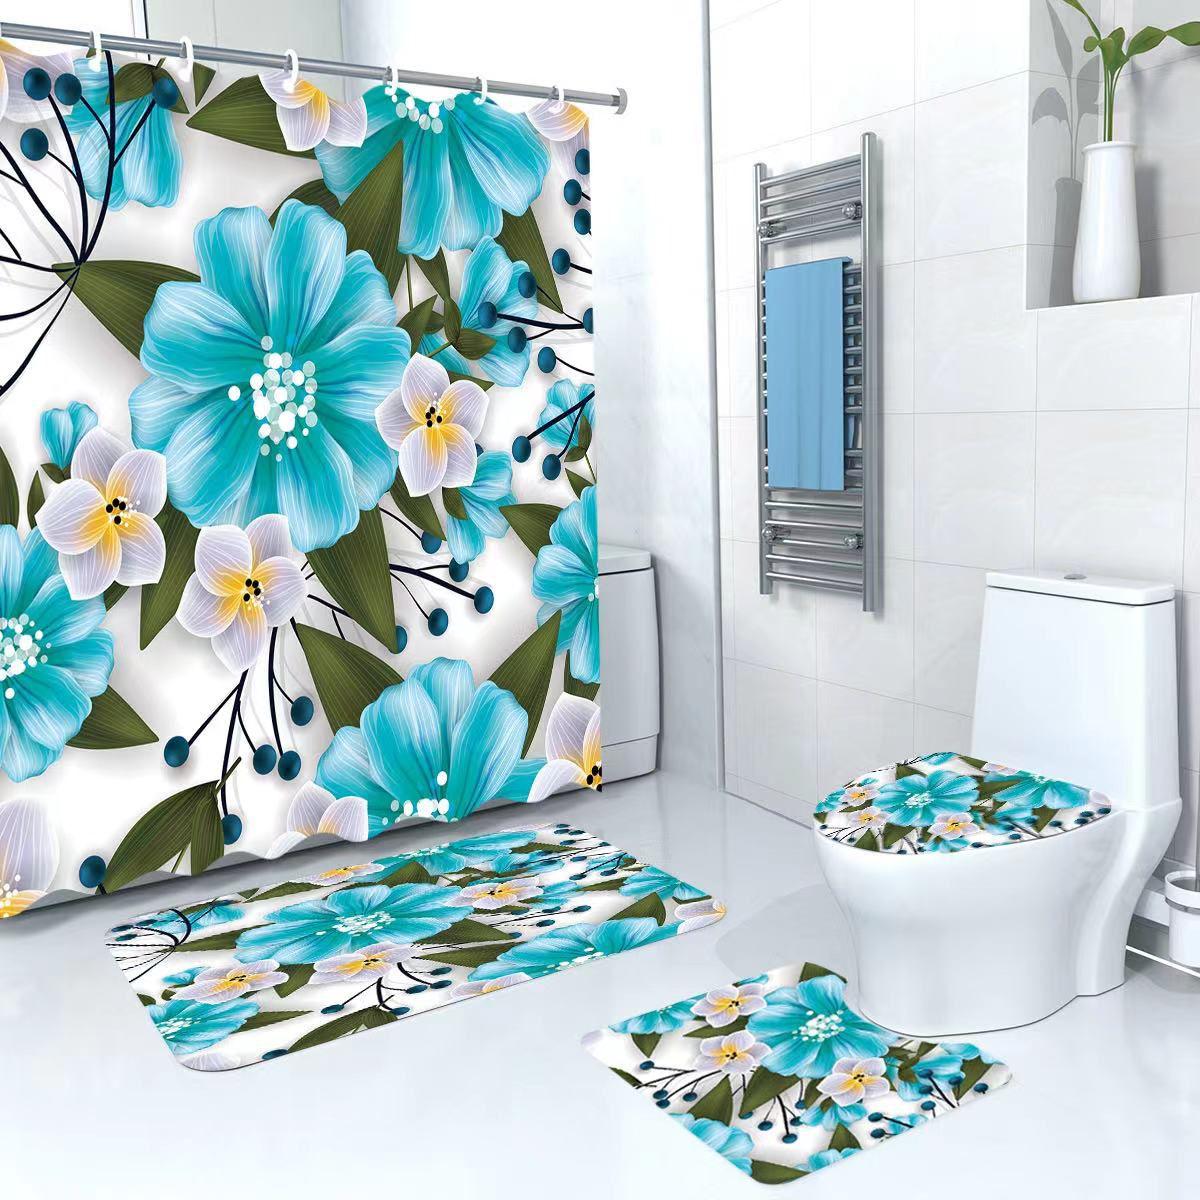 Set pentru baie: perdea, covorase si husa de toaleta, Blue Flowers